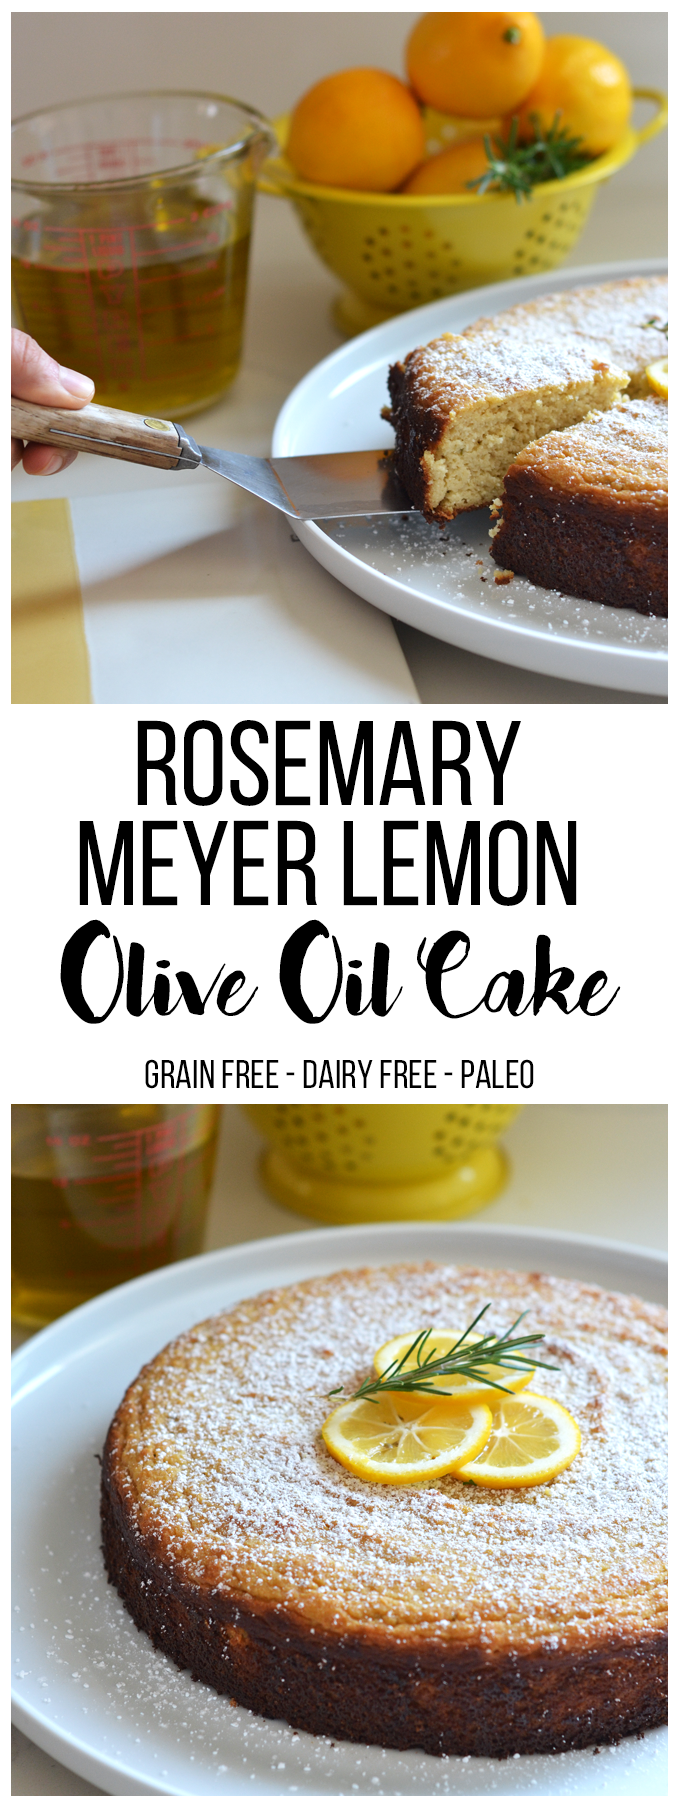 denne Rosemary Meyer Citron Olivenoliekage er kornfri, raffineret sukkerfri og mælkefri aka - Paleo! Det har sådan en fabelagtig smag og er perfekt til enhver fest eller brunch!